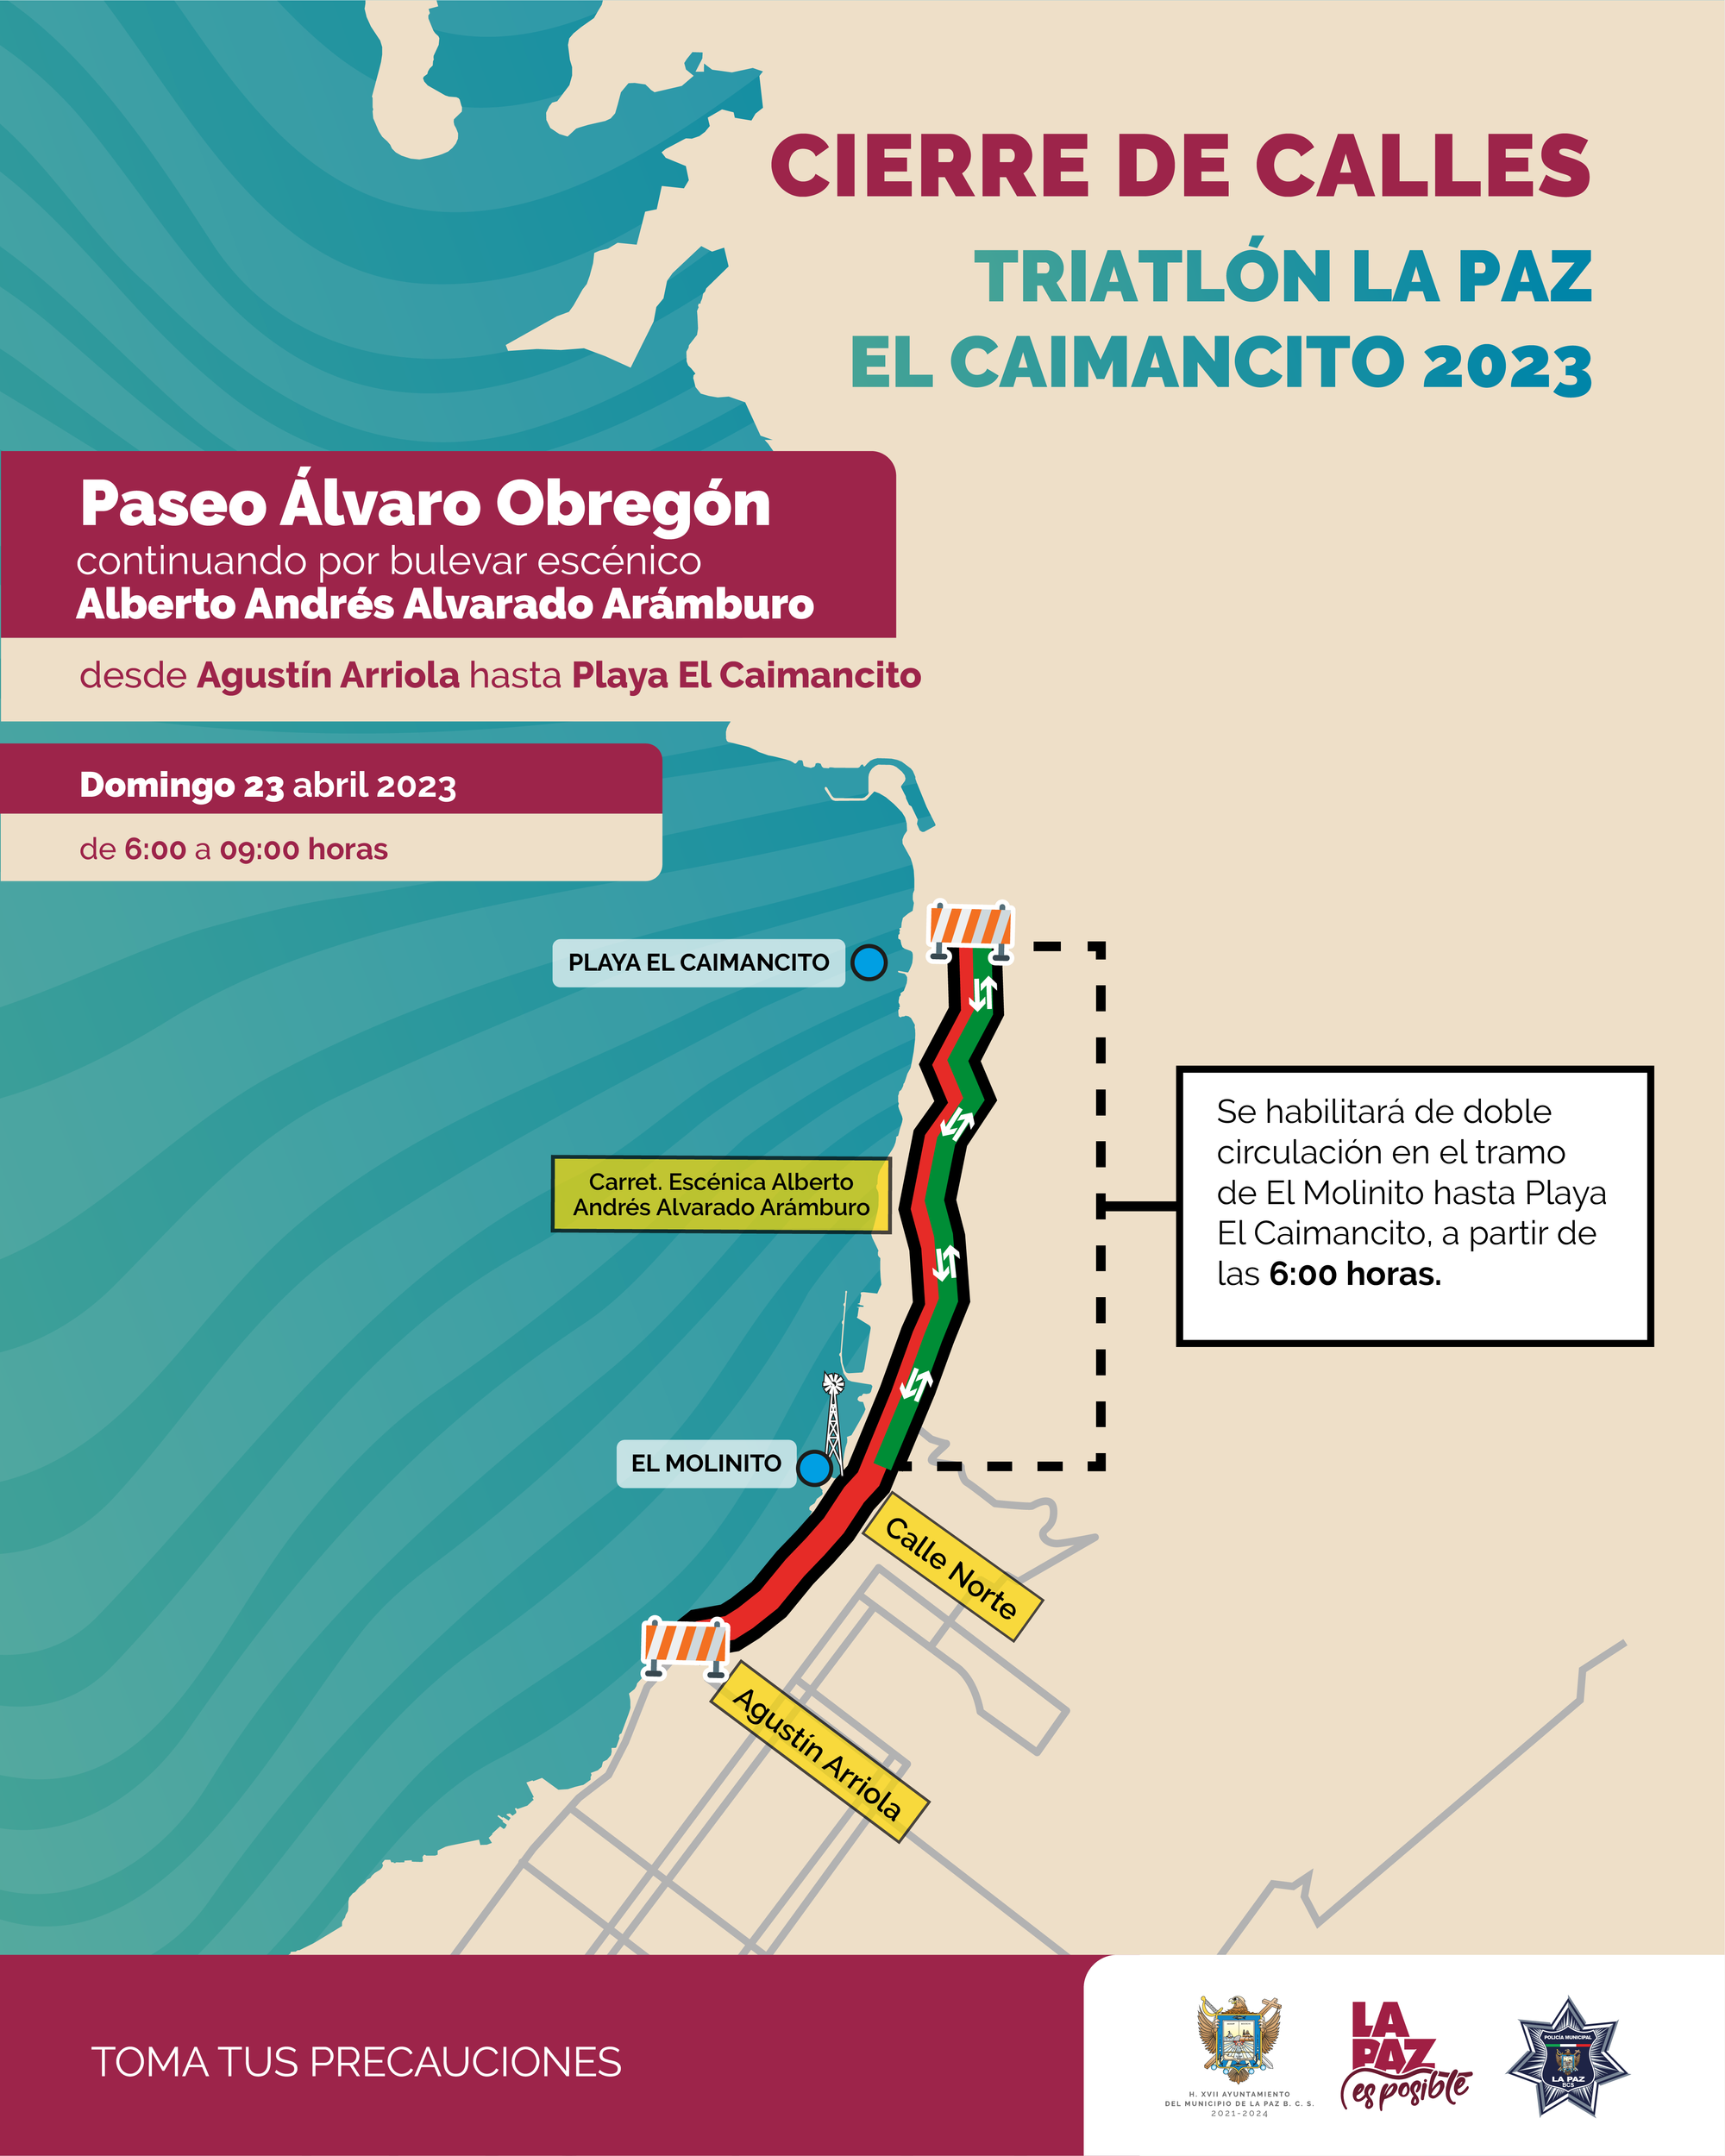 Cierre del Paseo Álvaro Obregón por Triatlón La Paz El Caimancito 2023